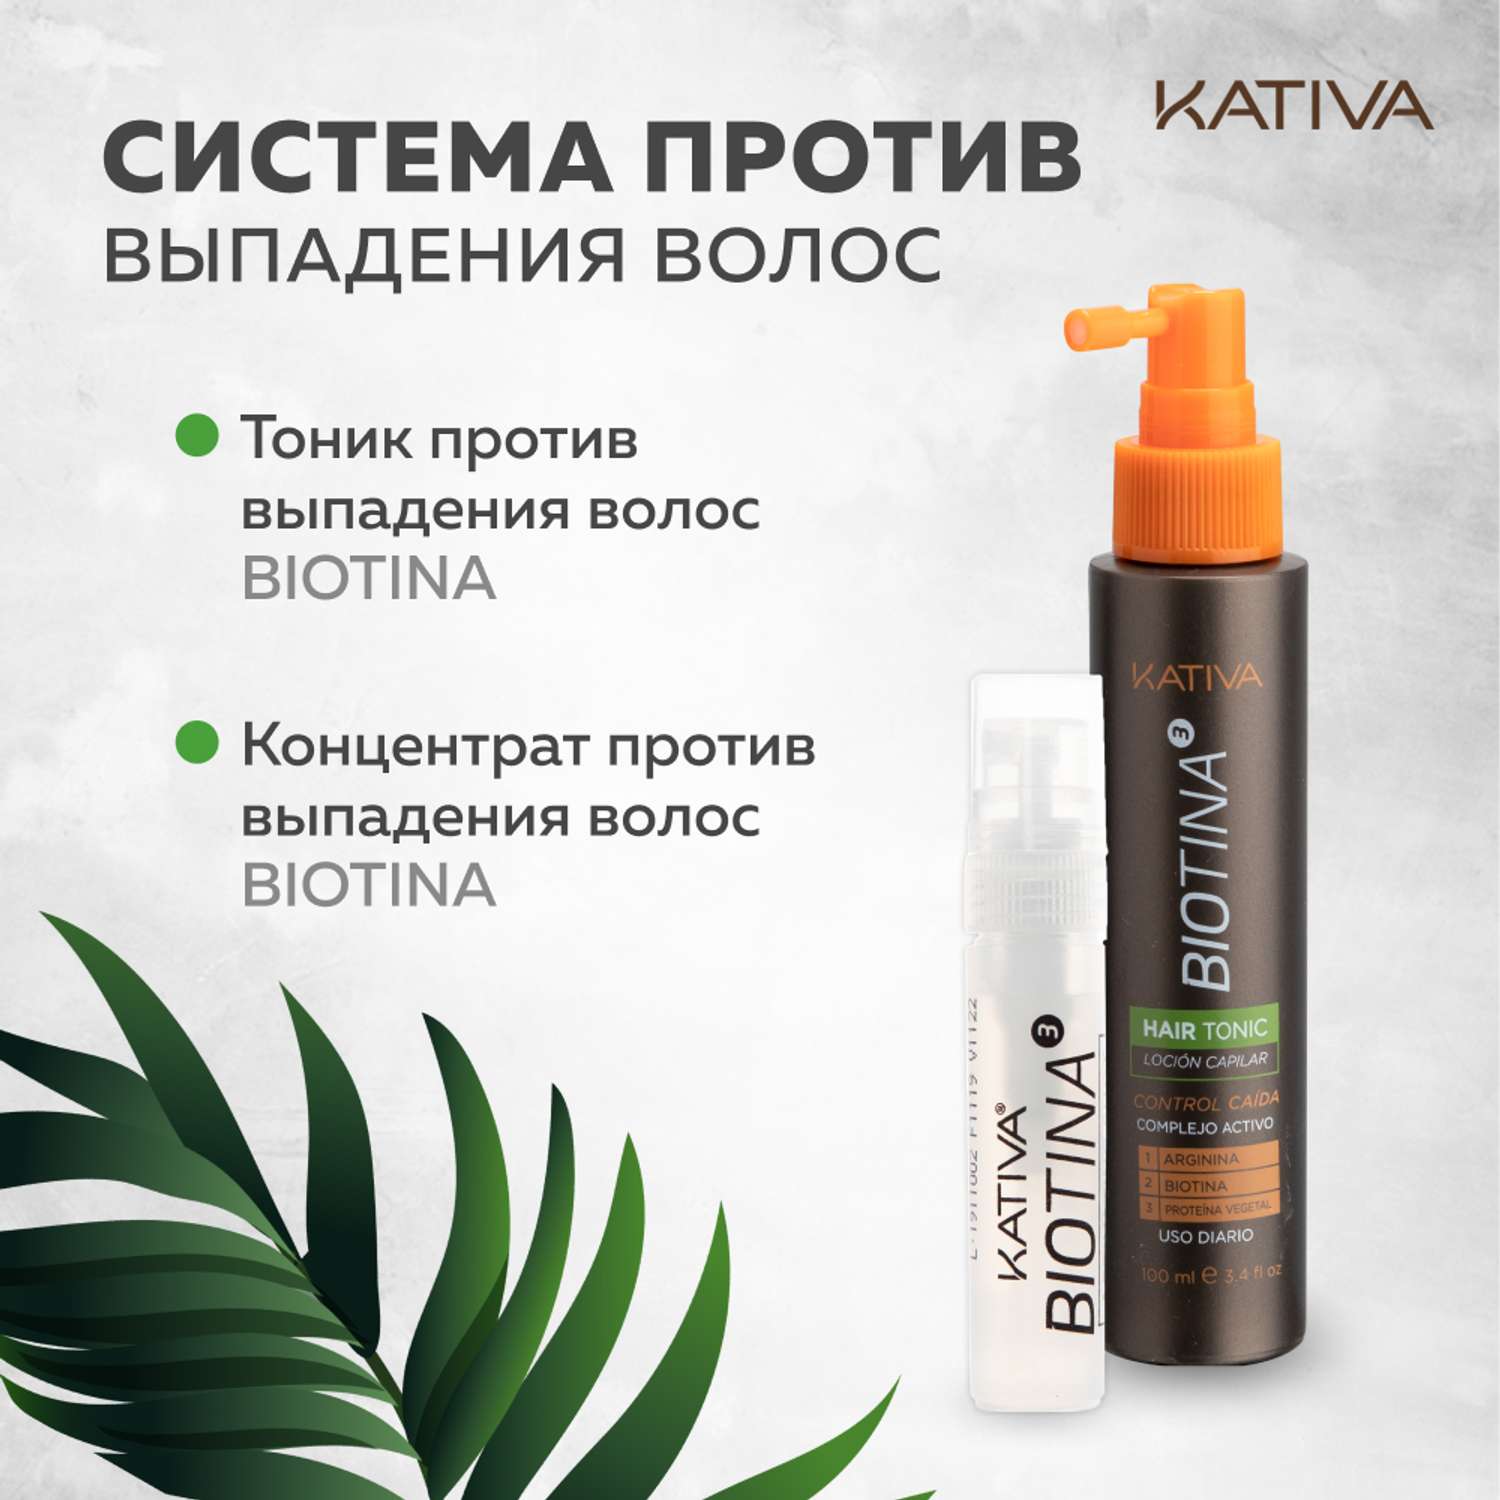 Шампунь Kativa против выпадения волос с биотином Biotina 250 мл - фото 5